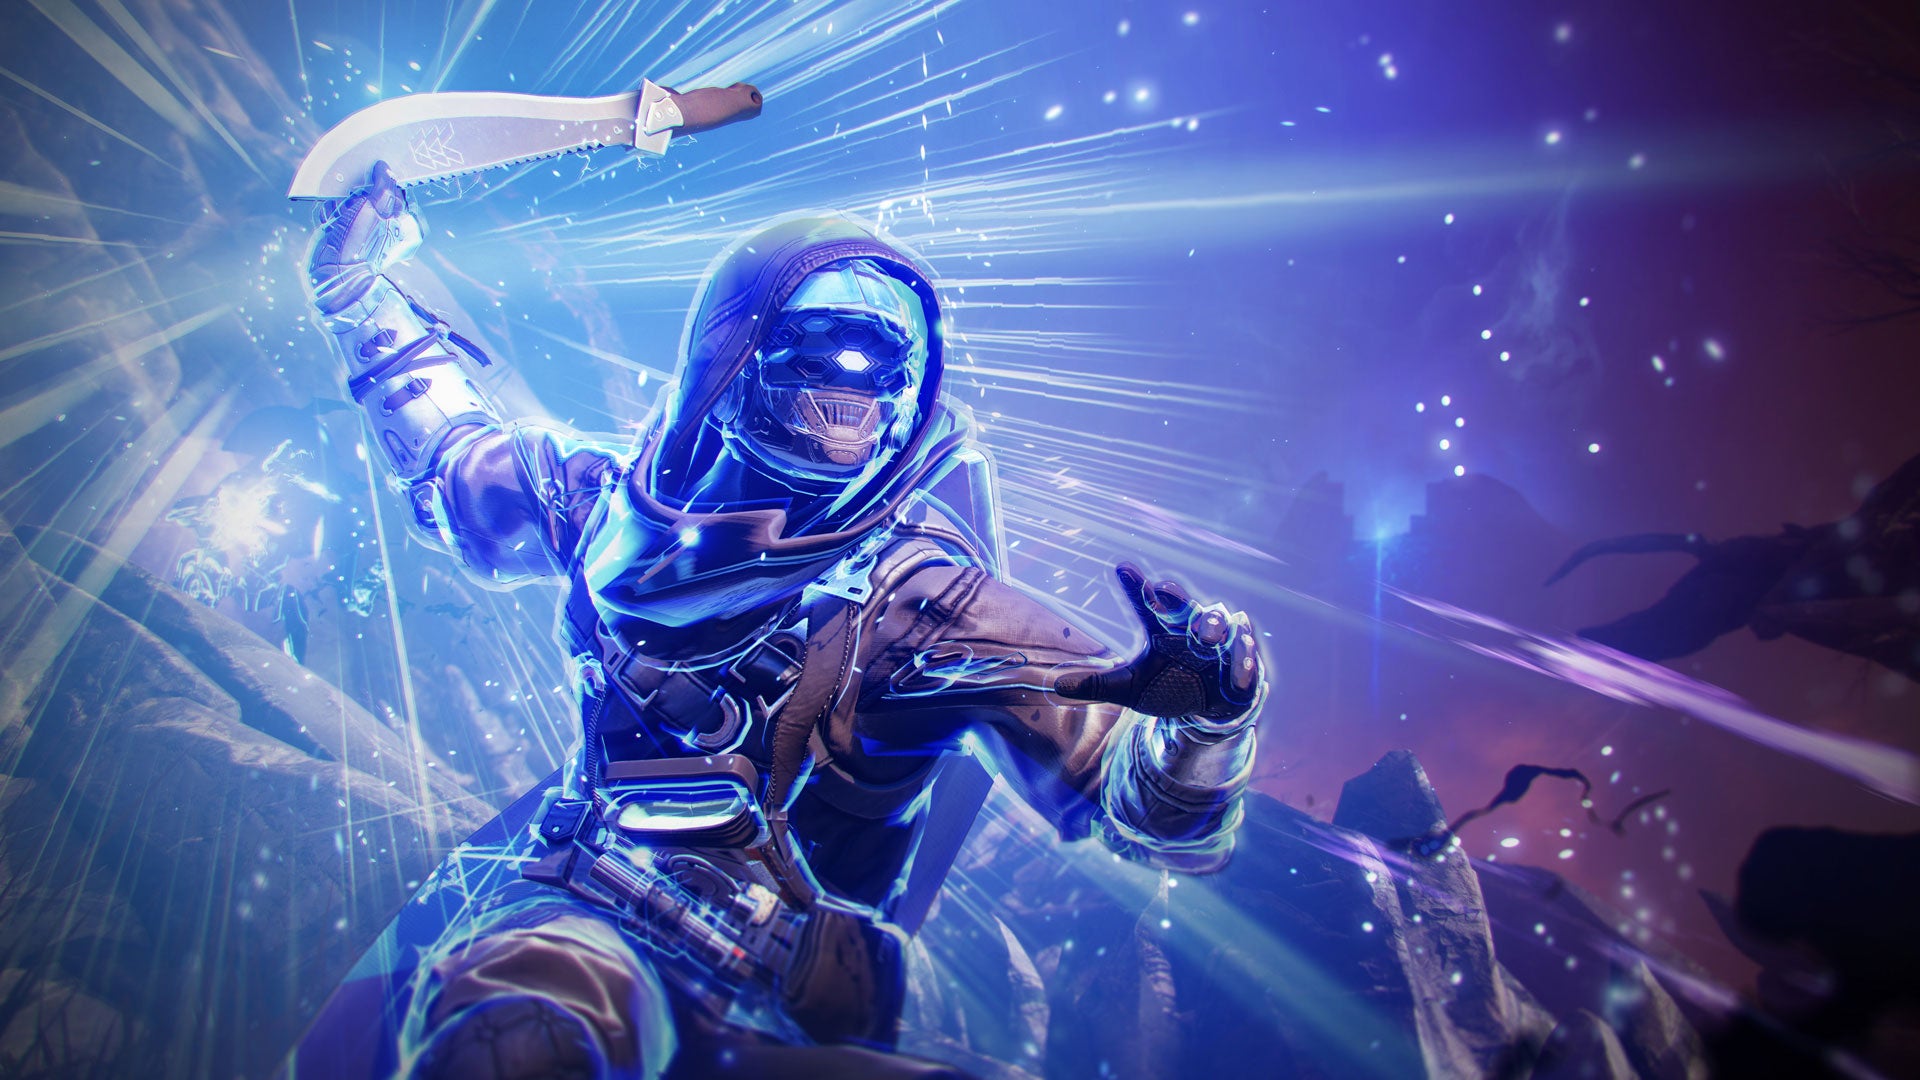 来自Destiny 2《最终形态》扩展的截图，显示猎人手持刀剑，作为新的“暴风边缘”超能力的一部分。